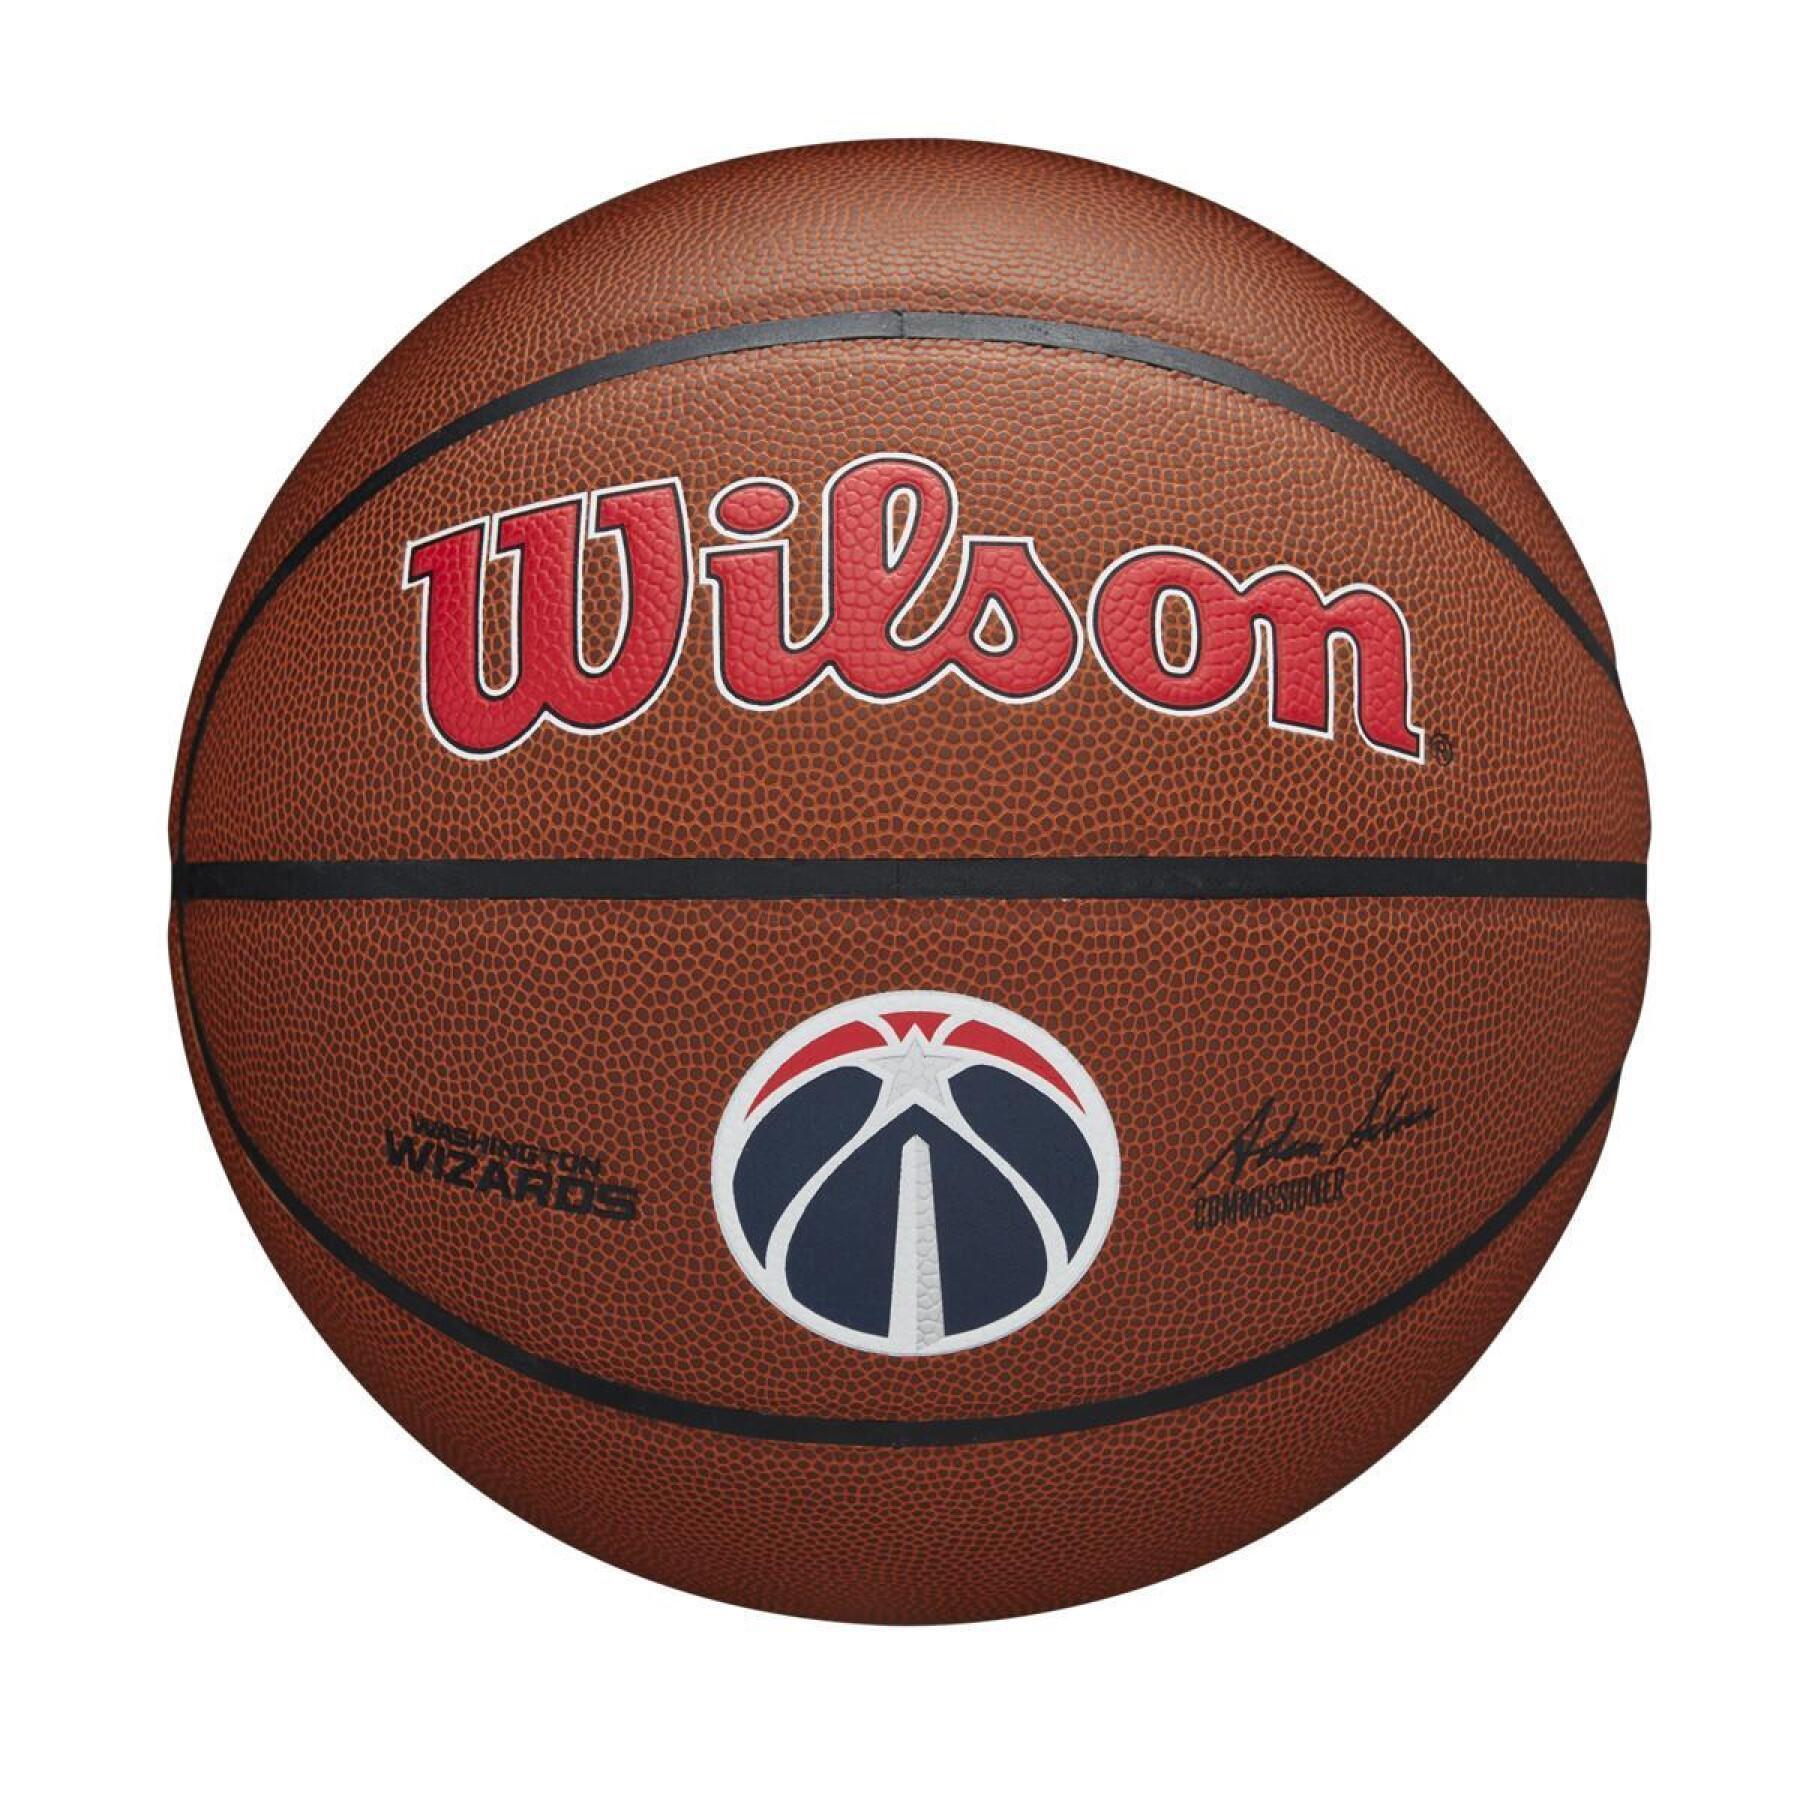 Ballon Washington Wizards NBA Team Alliance - Wilson - Marques - NBA